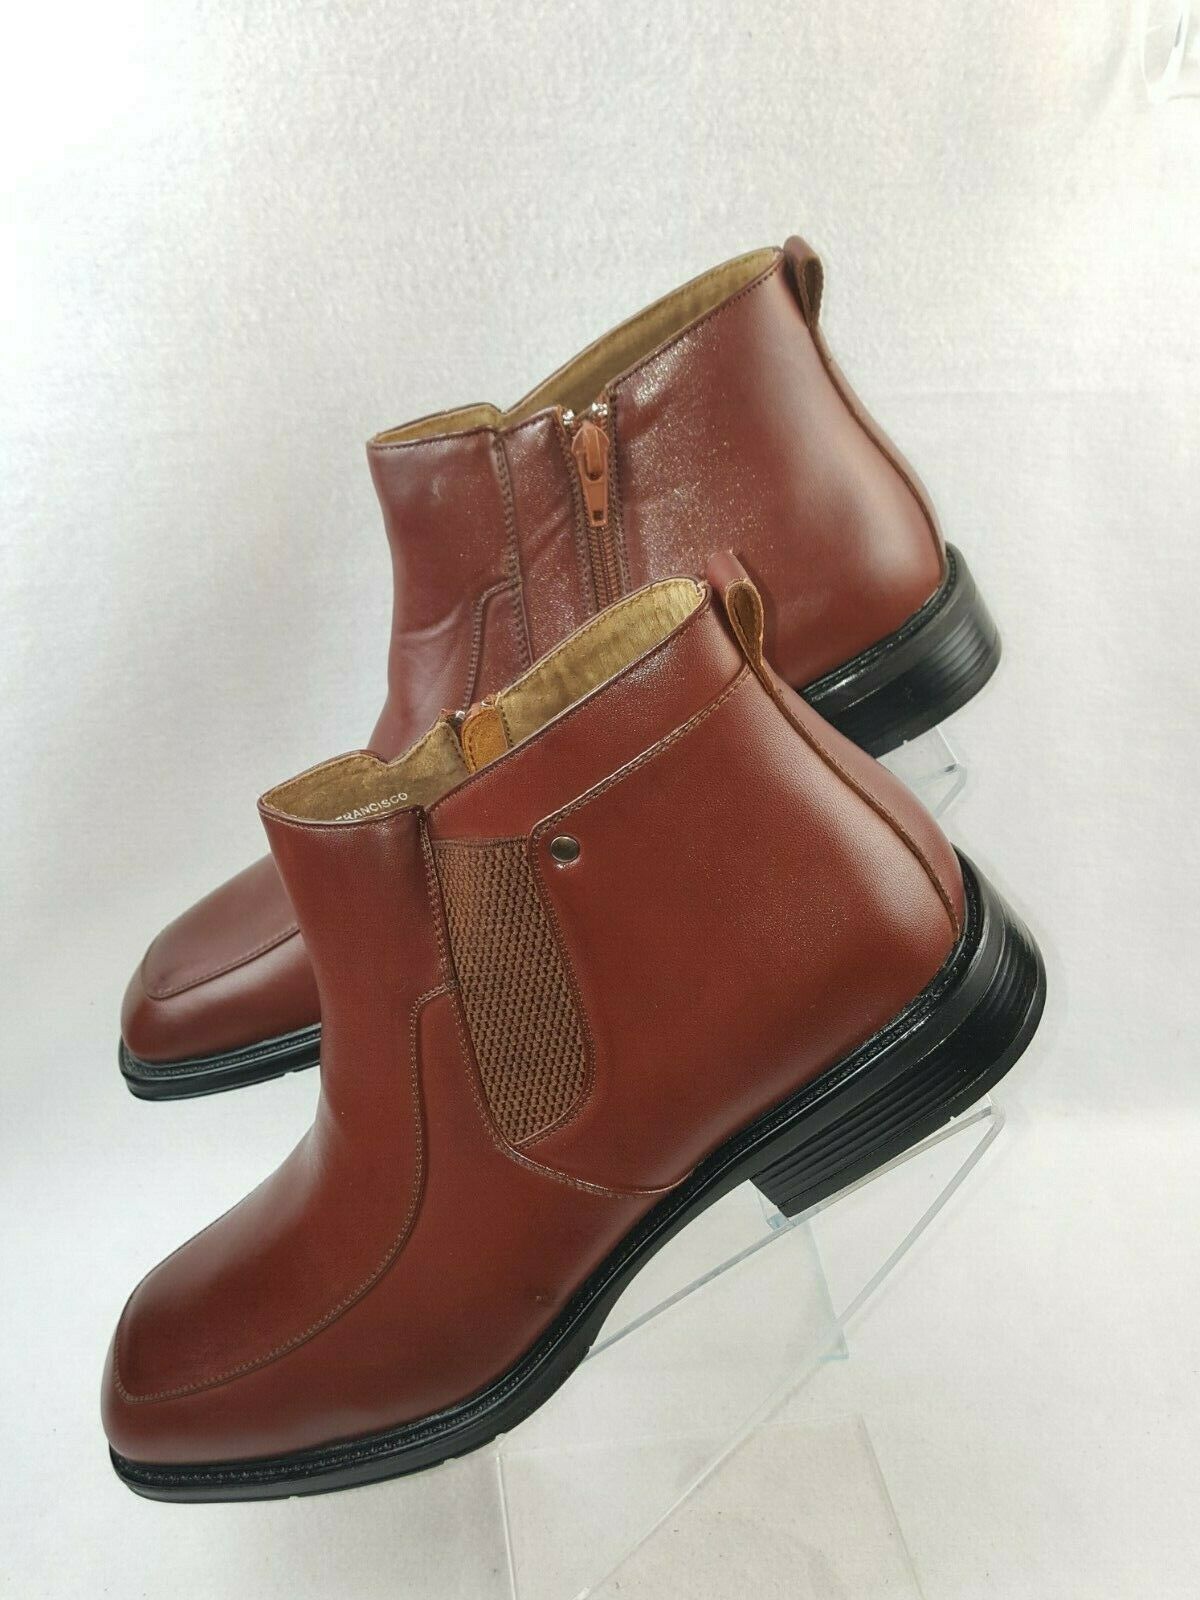 Delli Aldo "Francisco M-566" Men's Casual Ankle Boots Size 9 to 13